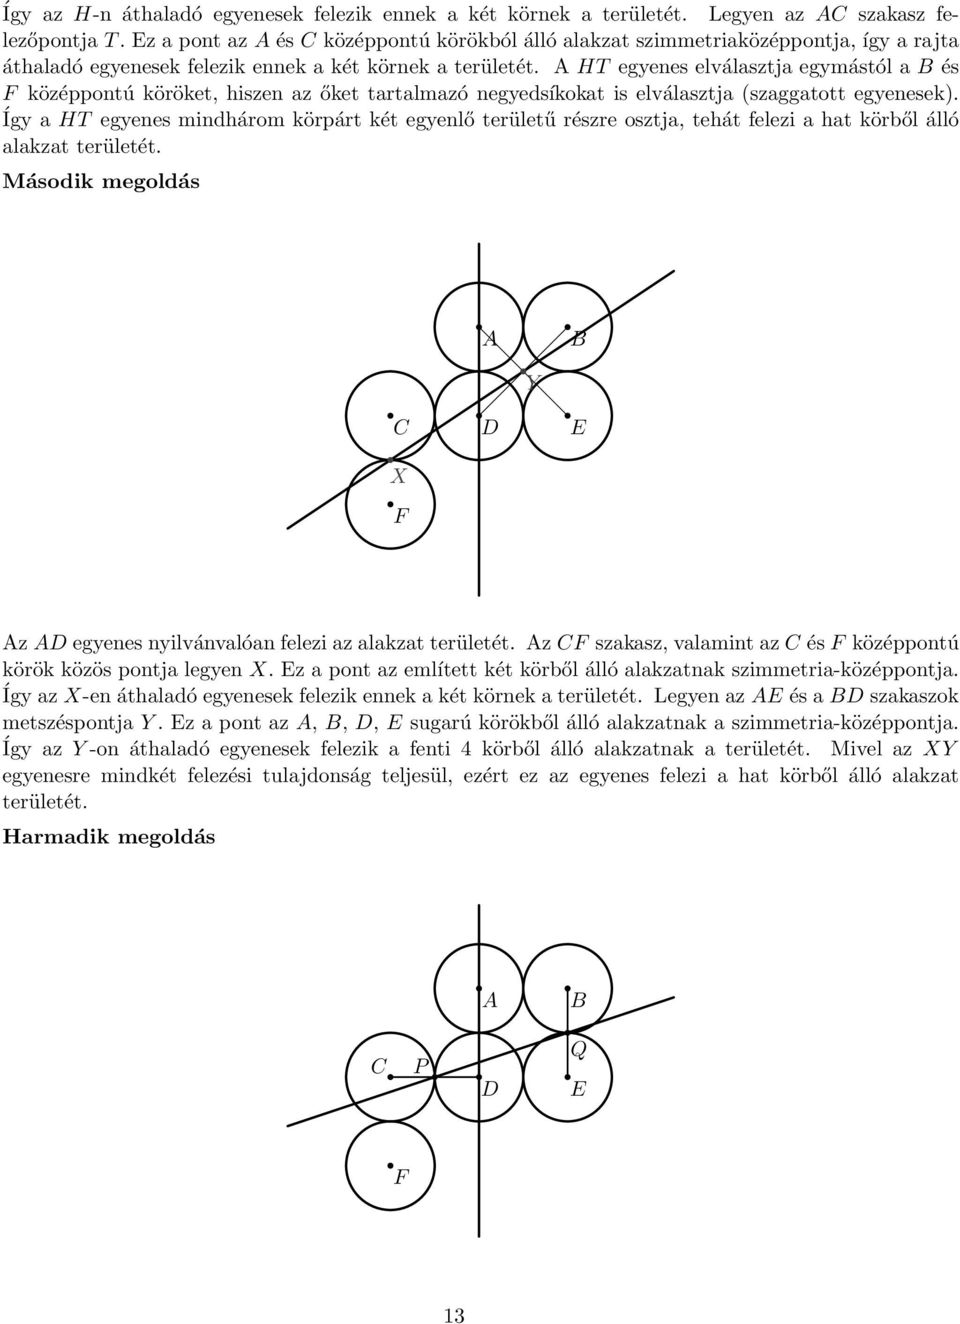 A HT egyenes elválasztja egymástól a B és F középpontú köröket, hiszen az őket tartalmazó negyedsíkokat is elválasztja (szaggatott egyenesek).